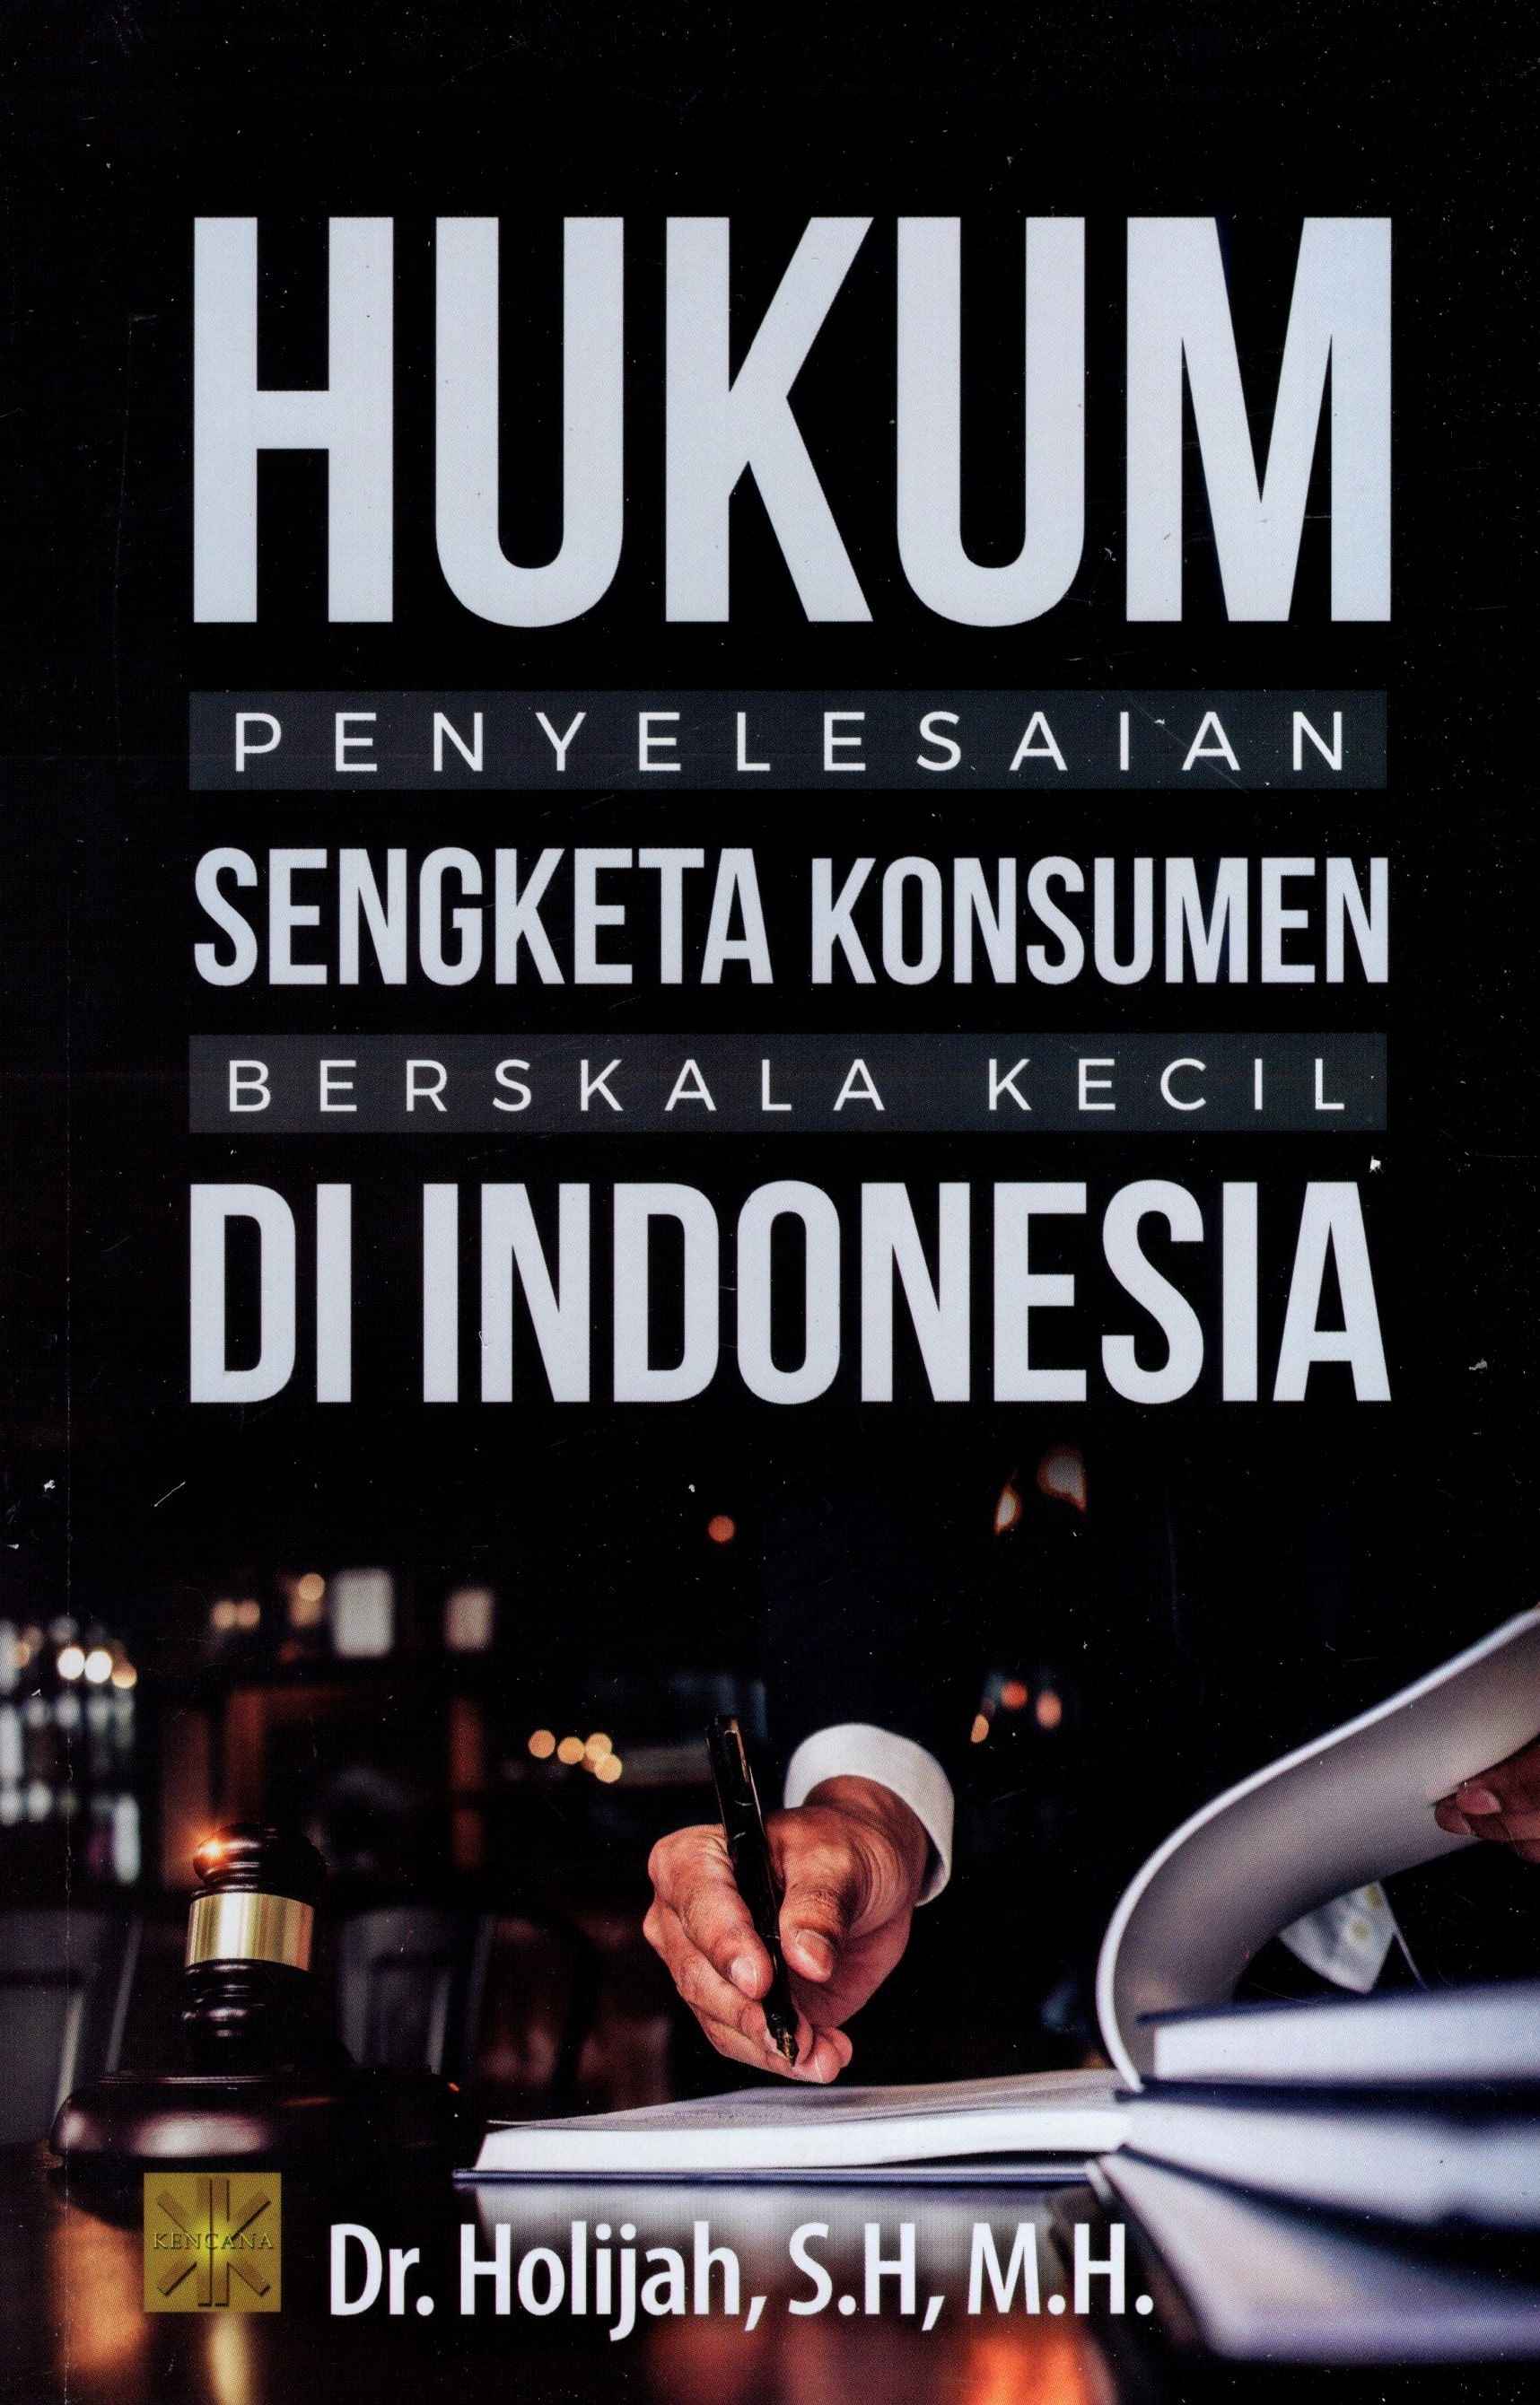 Hukum Penyelesaian Sengketa Konsumen Berskala Kecil Di Indonesia